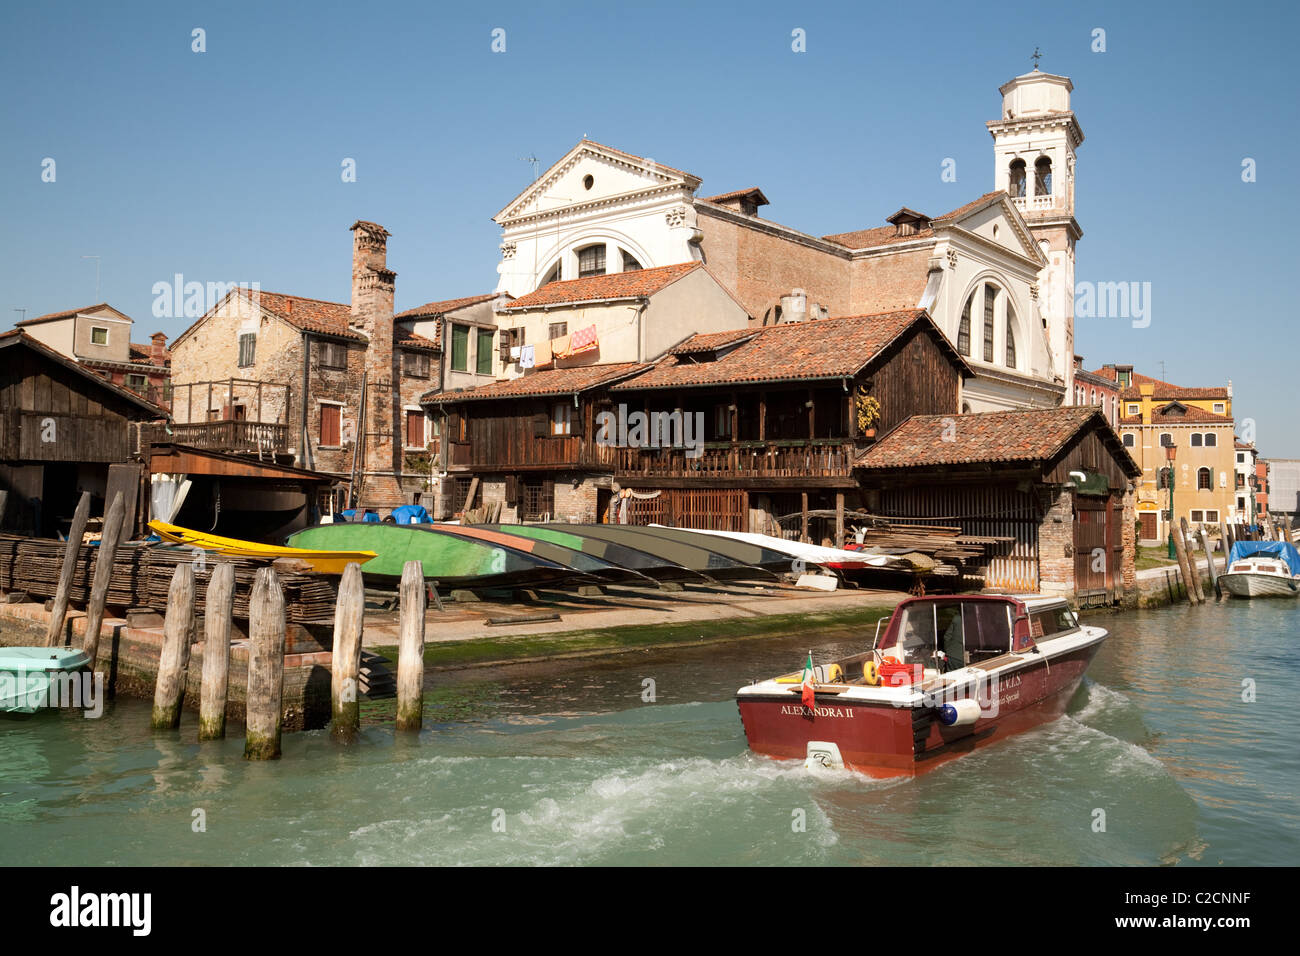 Eine Gondel-Werft am Ufer eines Kanals, Venedig, Italien Stockfoto